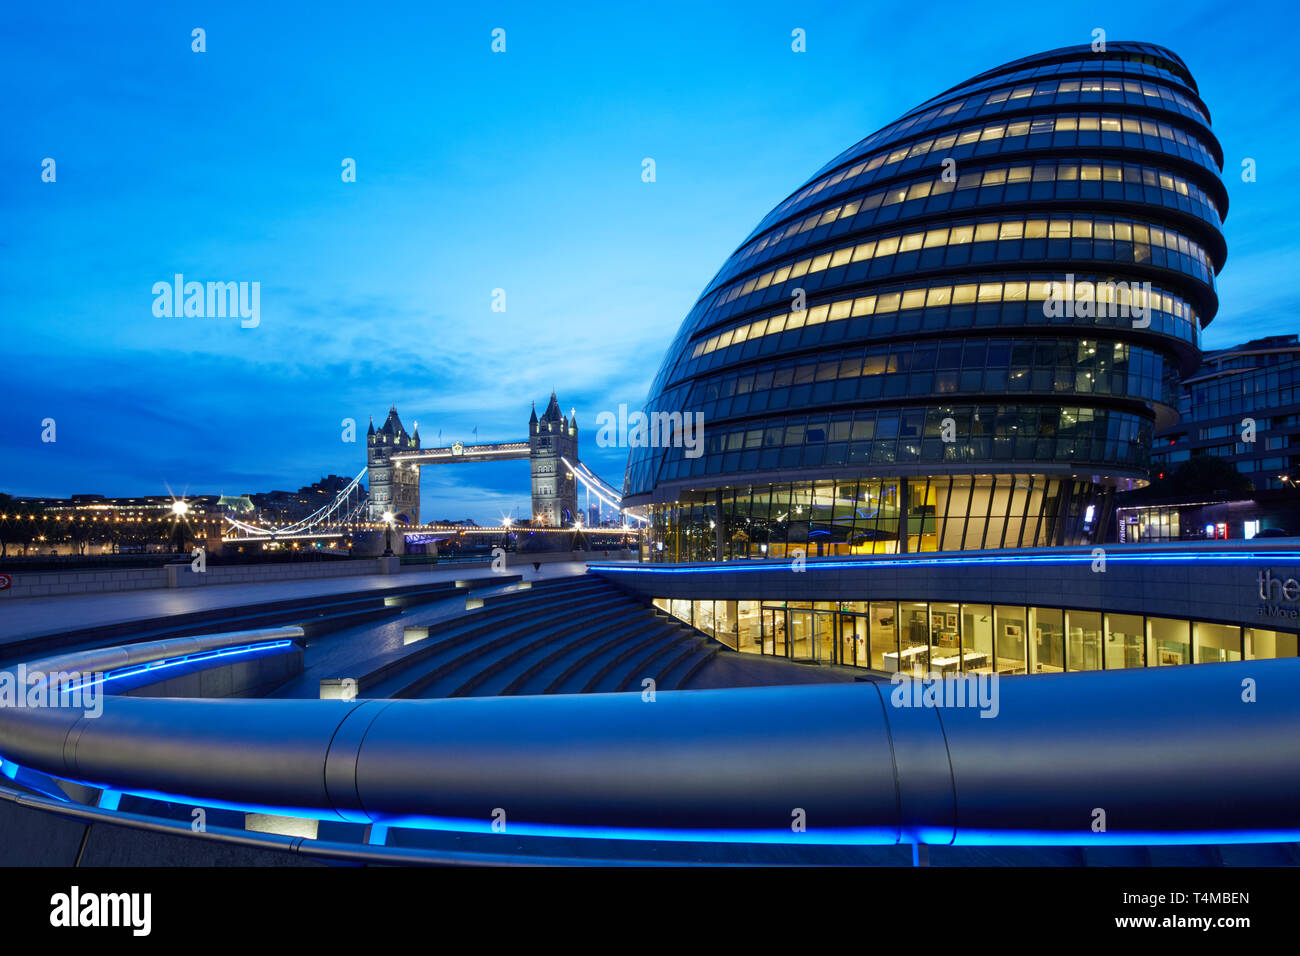 El Ayuntamiento y el Puente de la torre iluminada por el amanecer, Londres, Inglaterra, Gran Bretaña Foto de stock